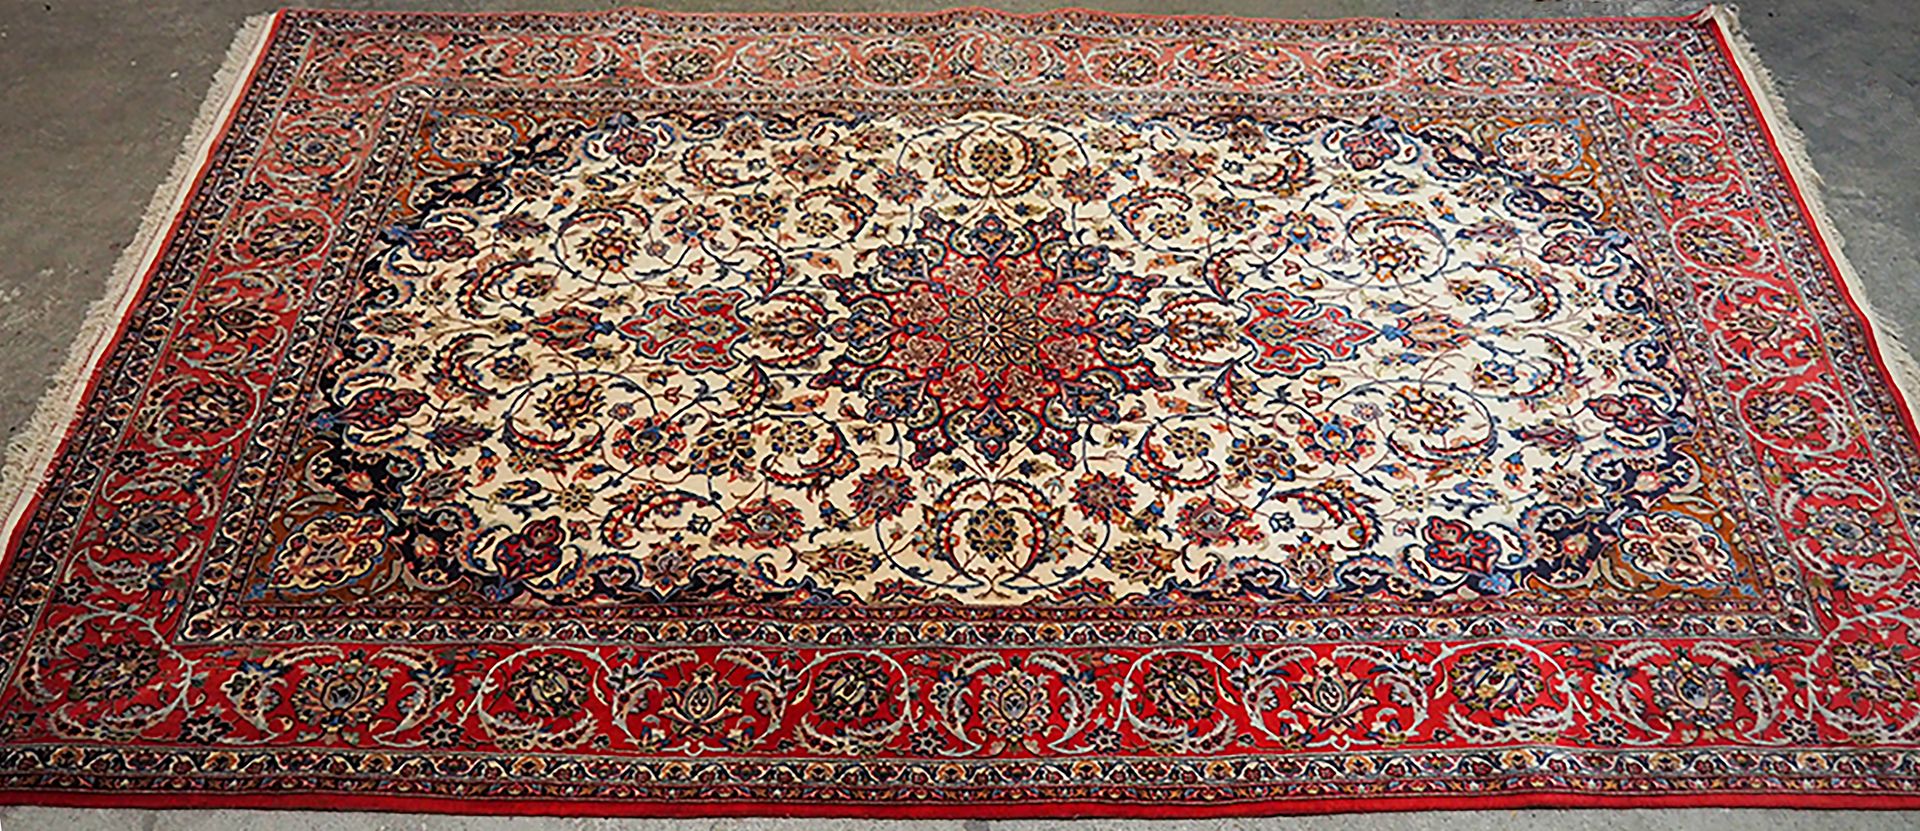 Null Großes und feines Isfahan - Iran

Schah-Zeit, um 1970

Maße: 248 x 179 cm

&hellip;